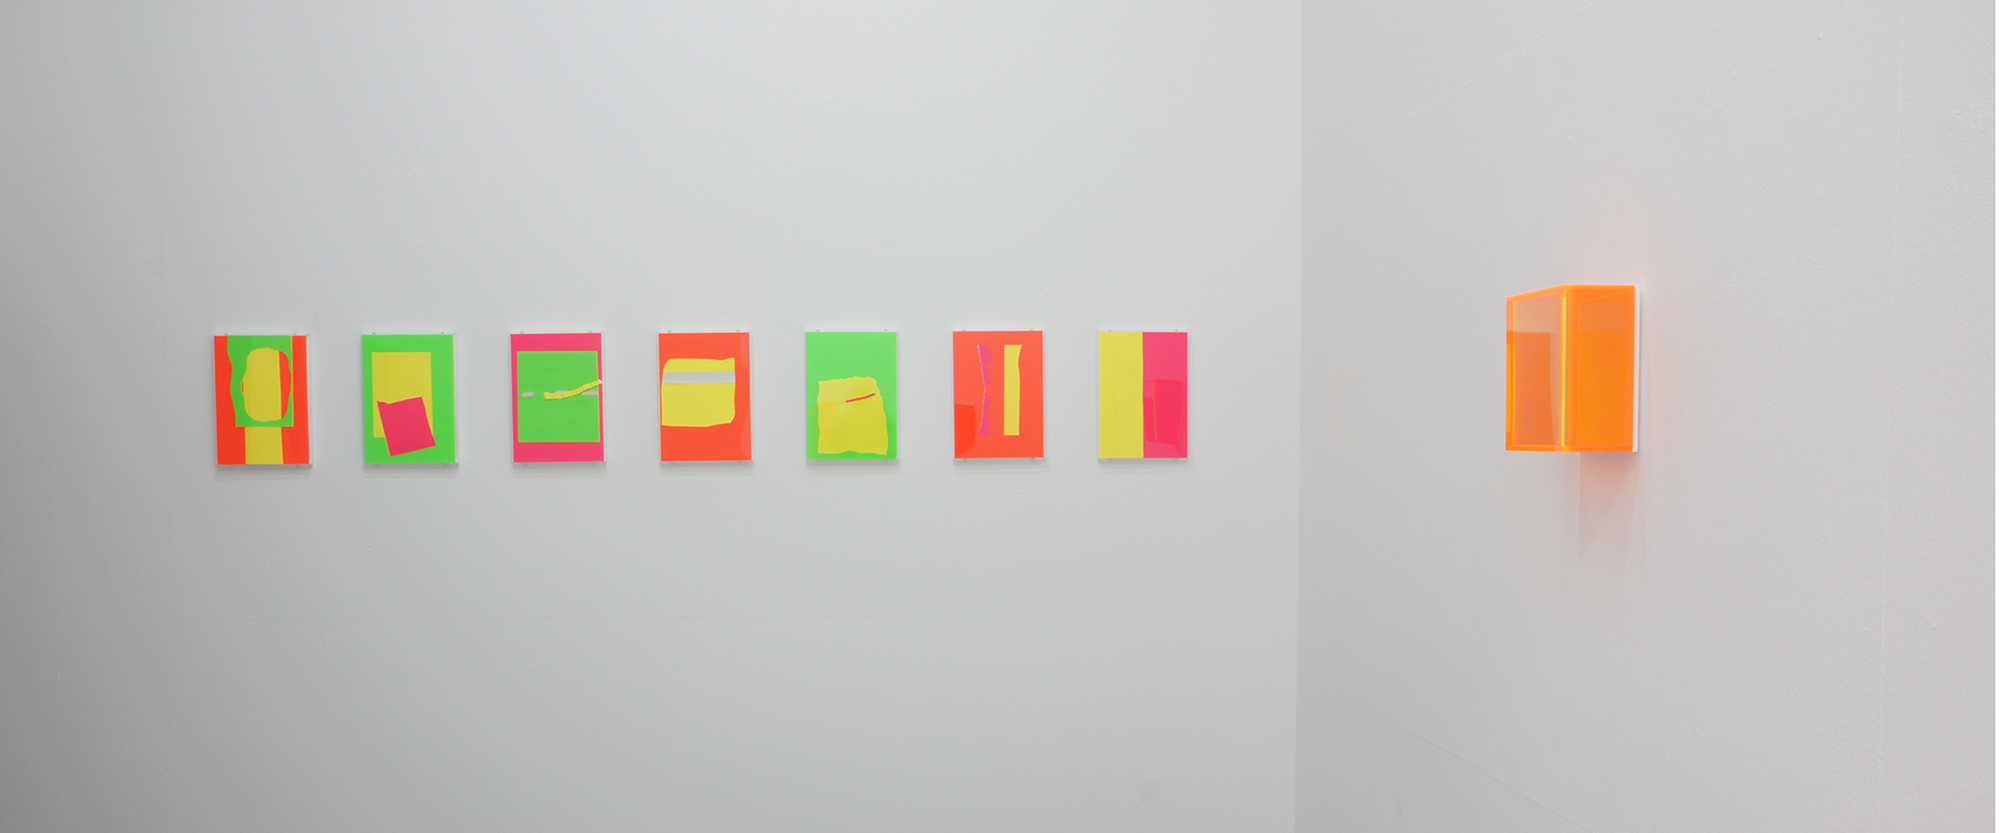 Ausstellungsansicht "Fluoridescent", Regine Schumann - Bill Thompson, Galerie Renate Bender 2020